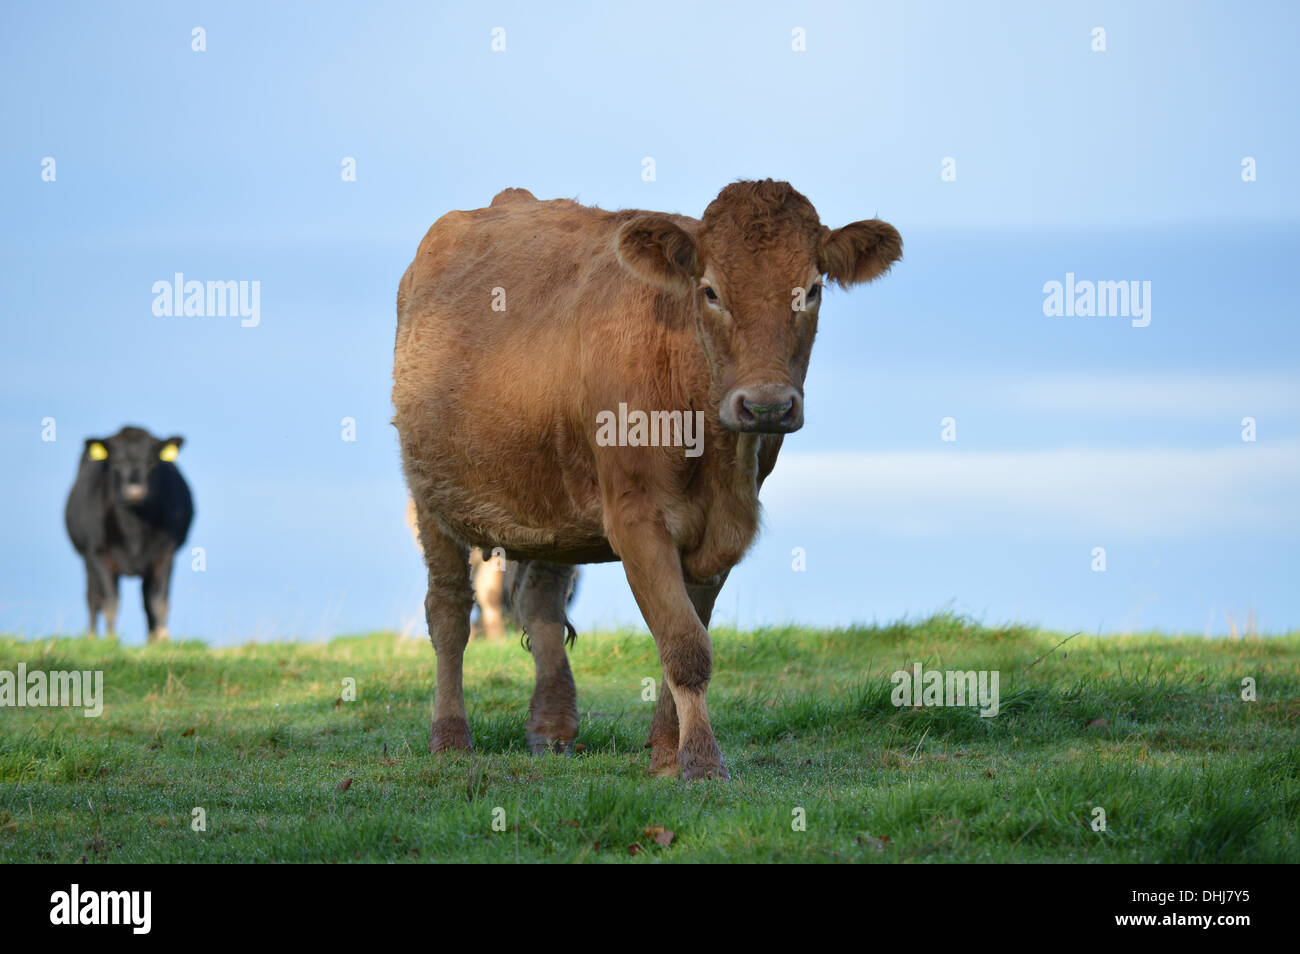 Una sola vaca se mueve para echar un vistazo más de cerca, mientras que otra vaca negra queda atrás, mirando con cautela. Foto de stock